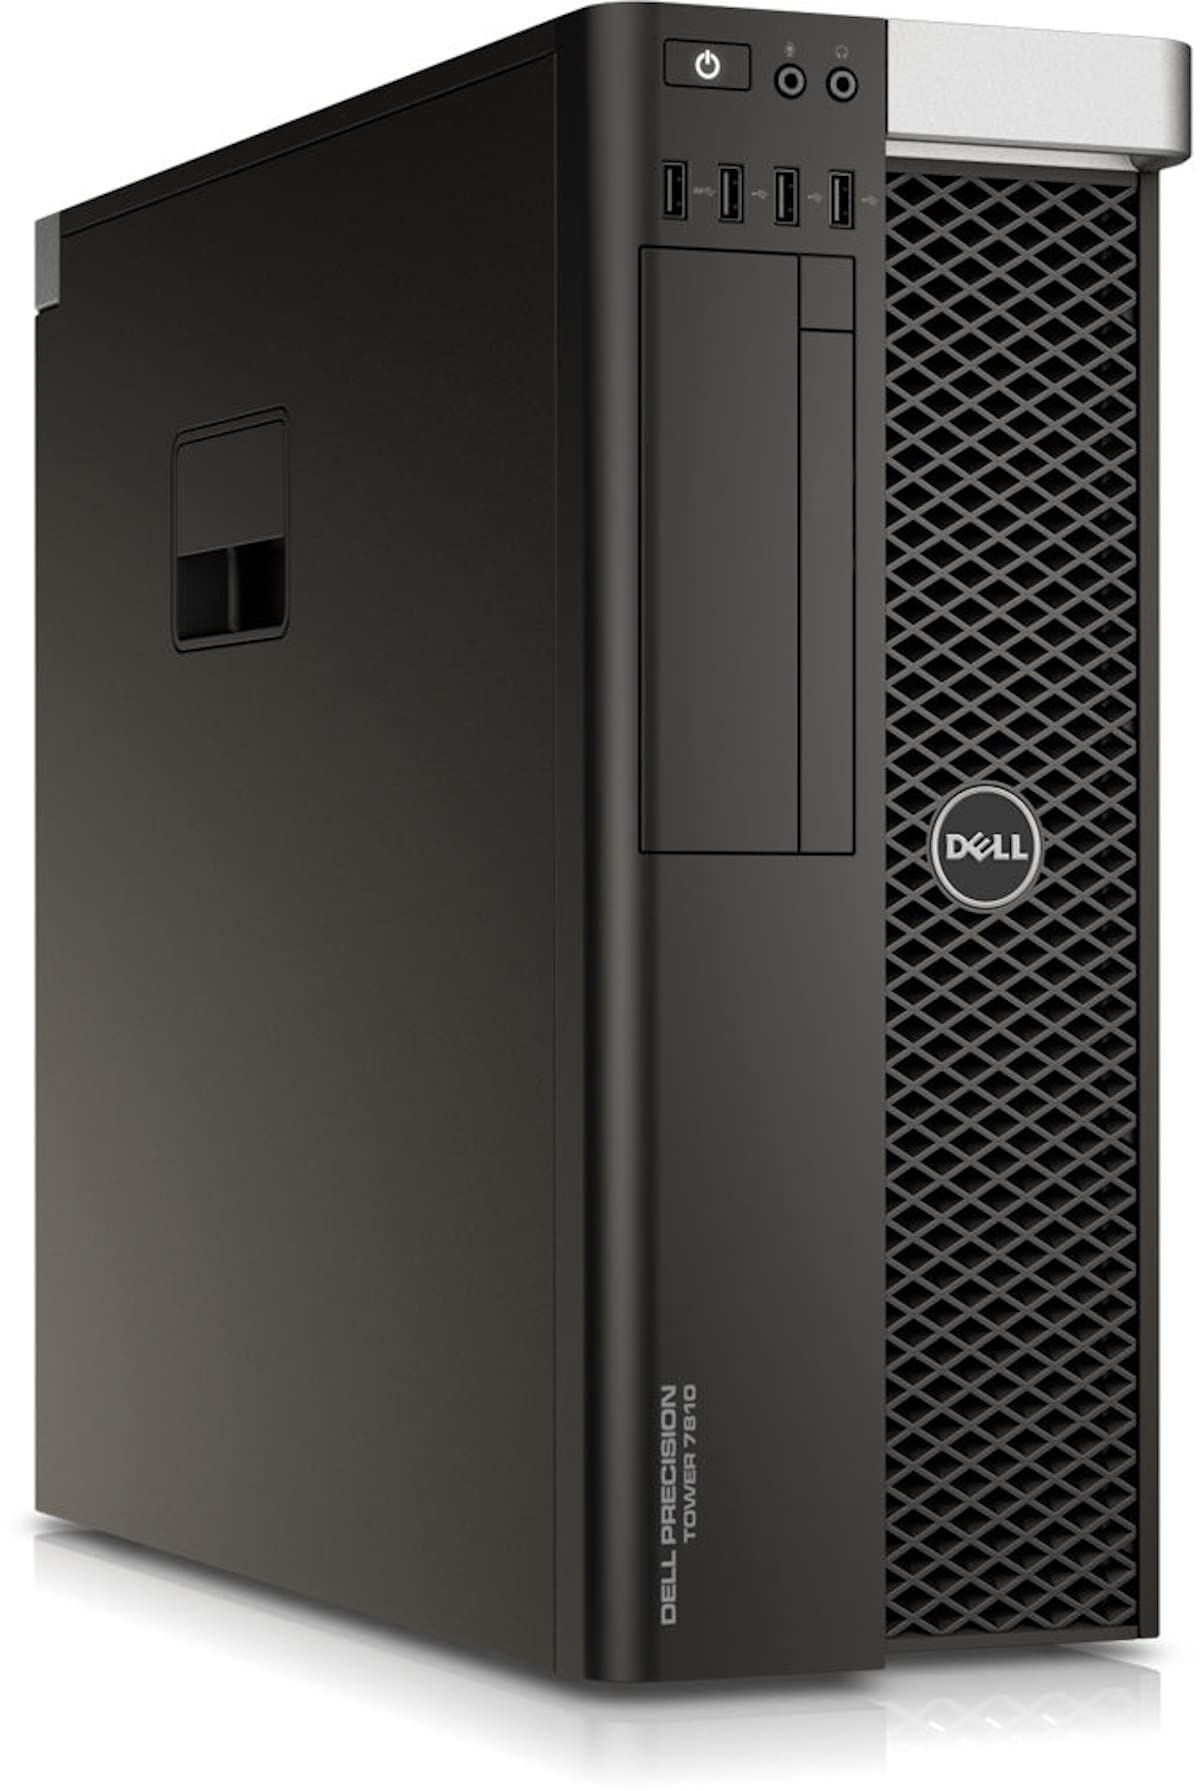 Dell precision tower t 7810 workstation statie grafica